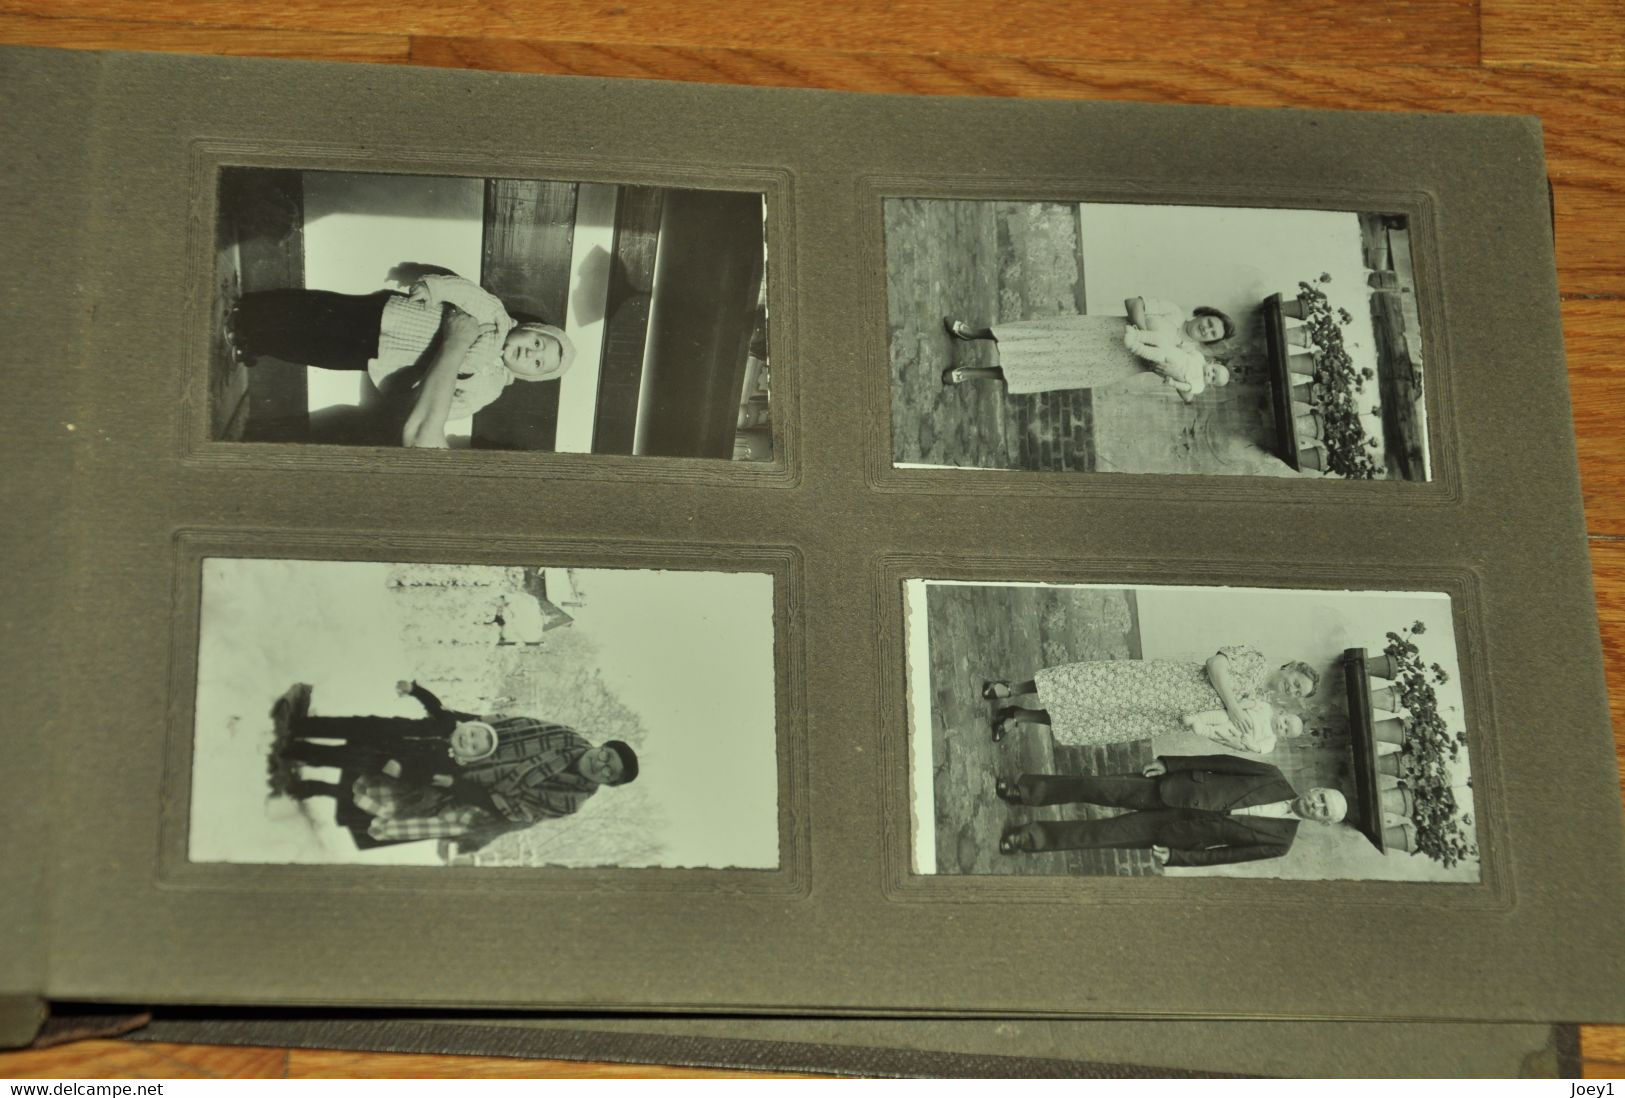 Bel Album photos, vie à la campagne années 30,180 photos